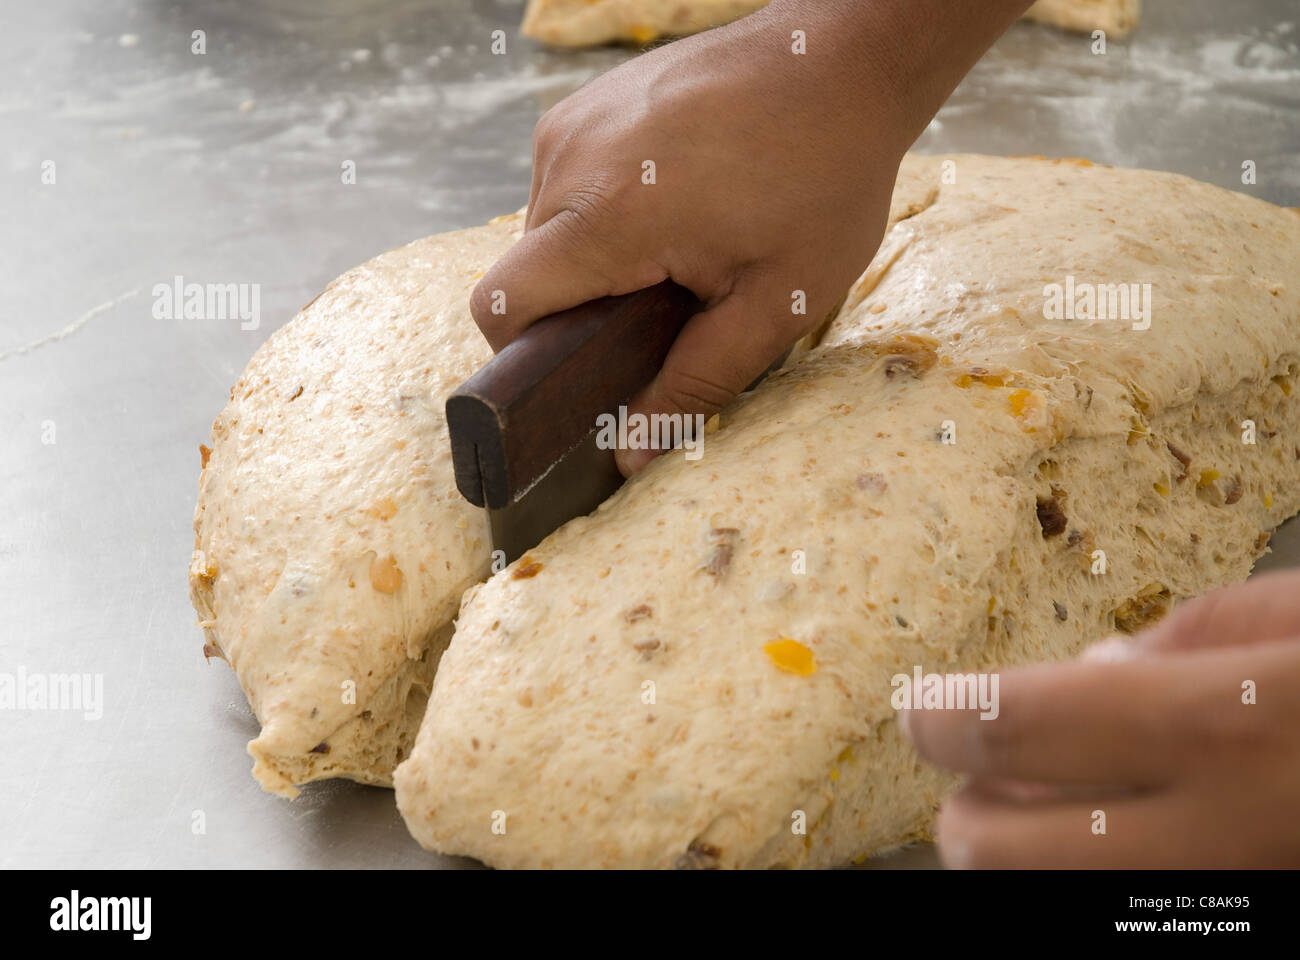 Cook dividing a dough ball Stock Photo